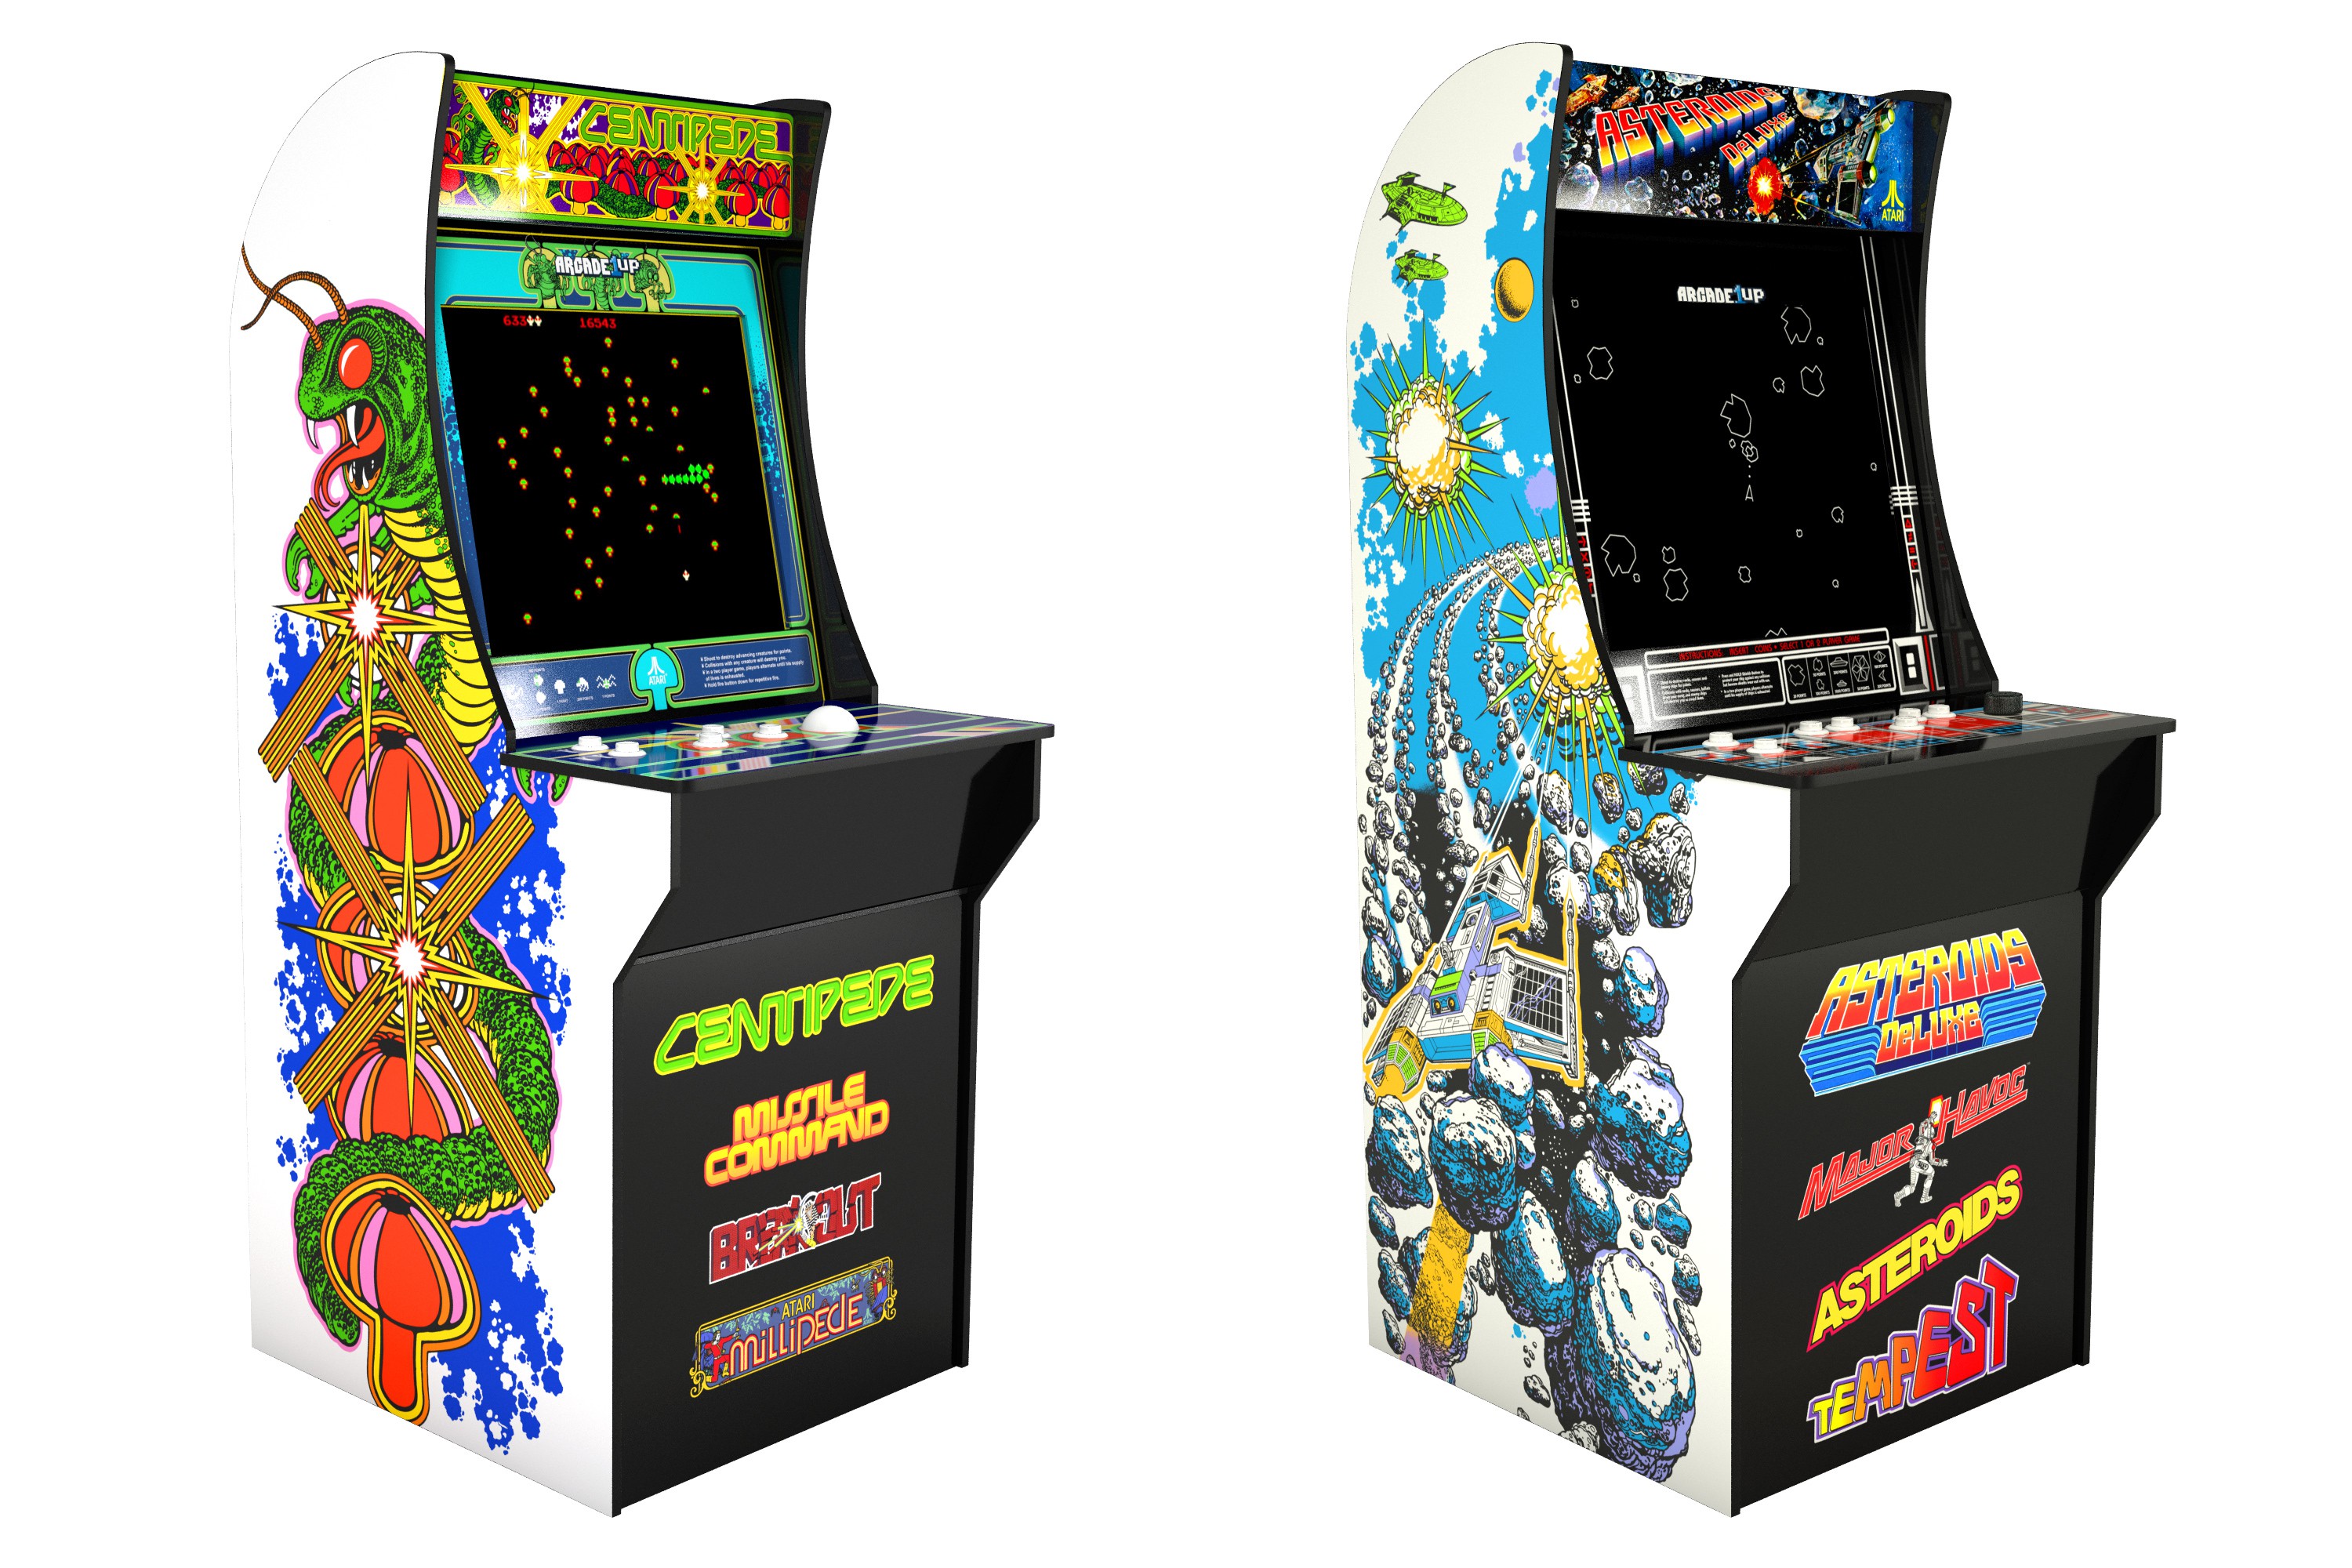 Игровой автомат пун пон. Arcade1up. Capcom Arcade Cabinet Xbox 360. Игровой автомат "Breakout". Ретро игровой автомат.